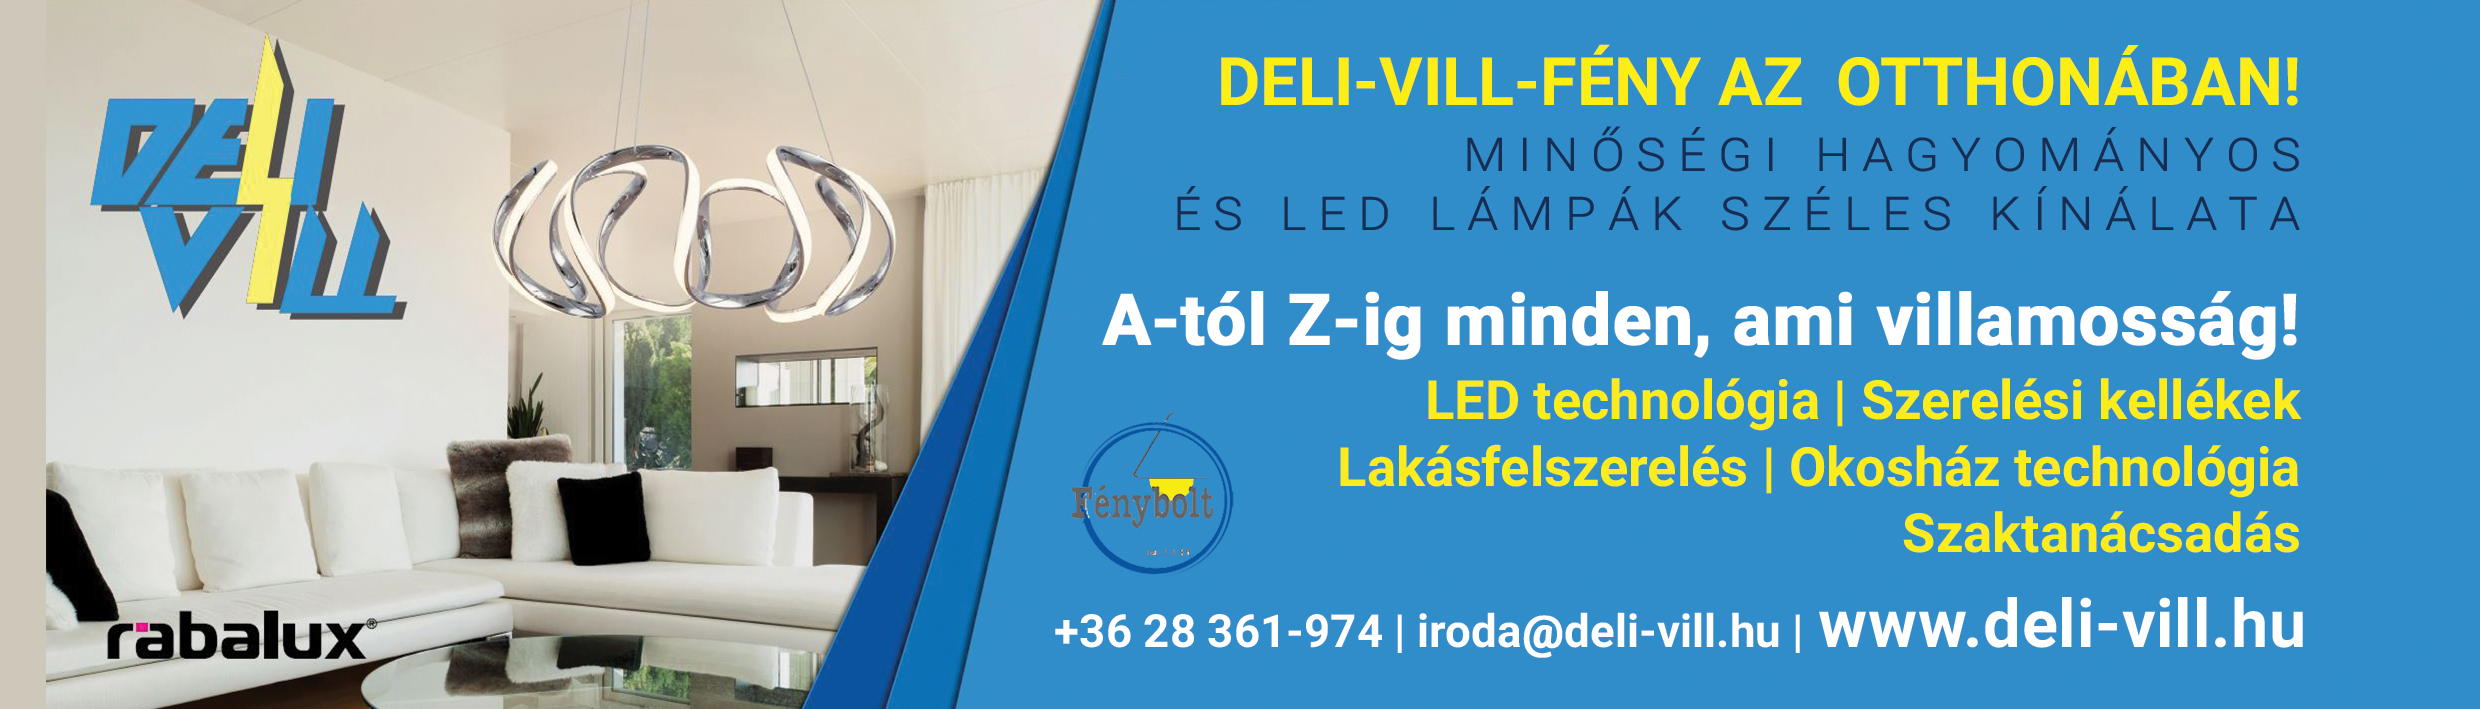 Deli-Vill Fény az  otthonában! - Lámpák A-tól Z-ig a Deli-Vill- től 2021